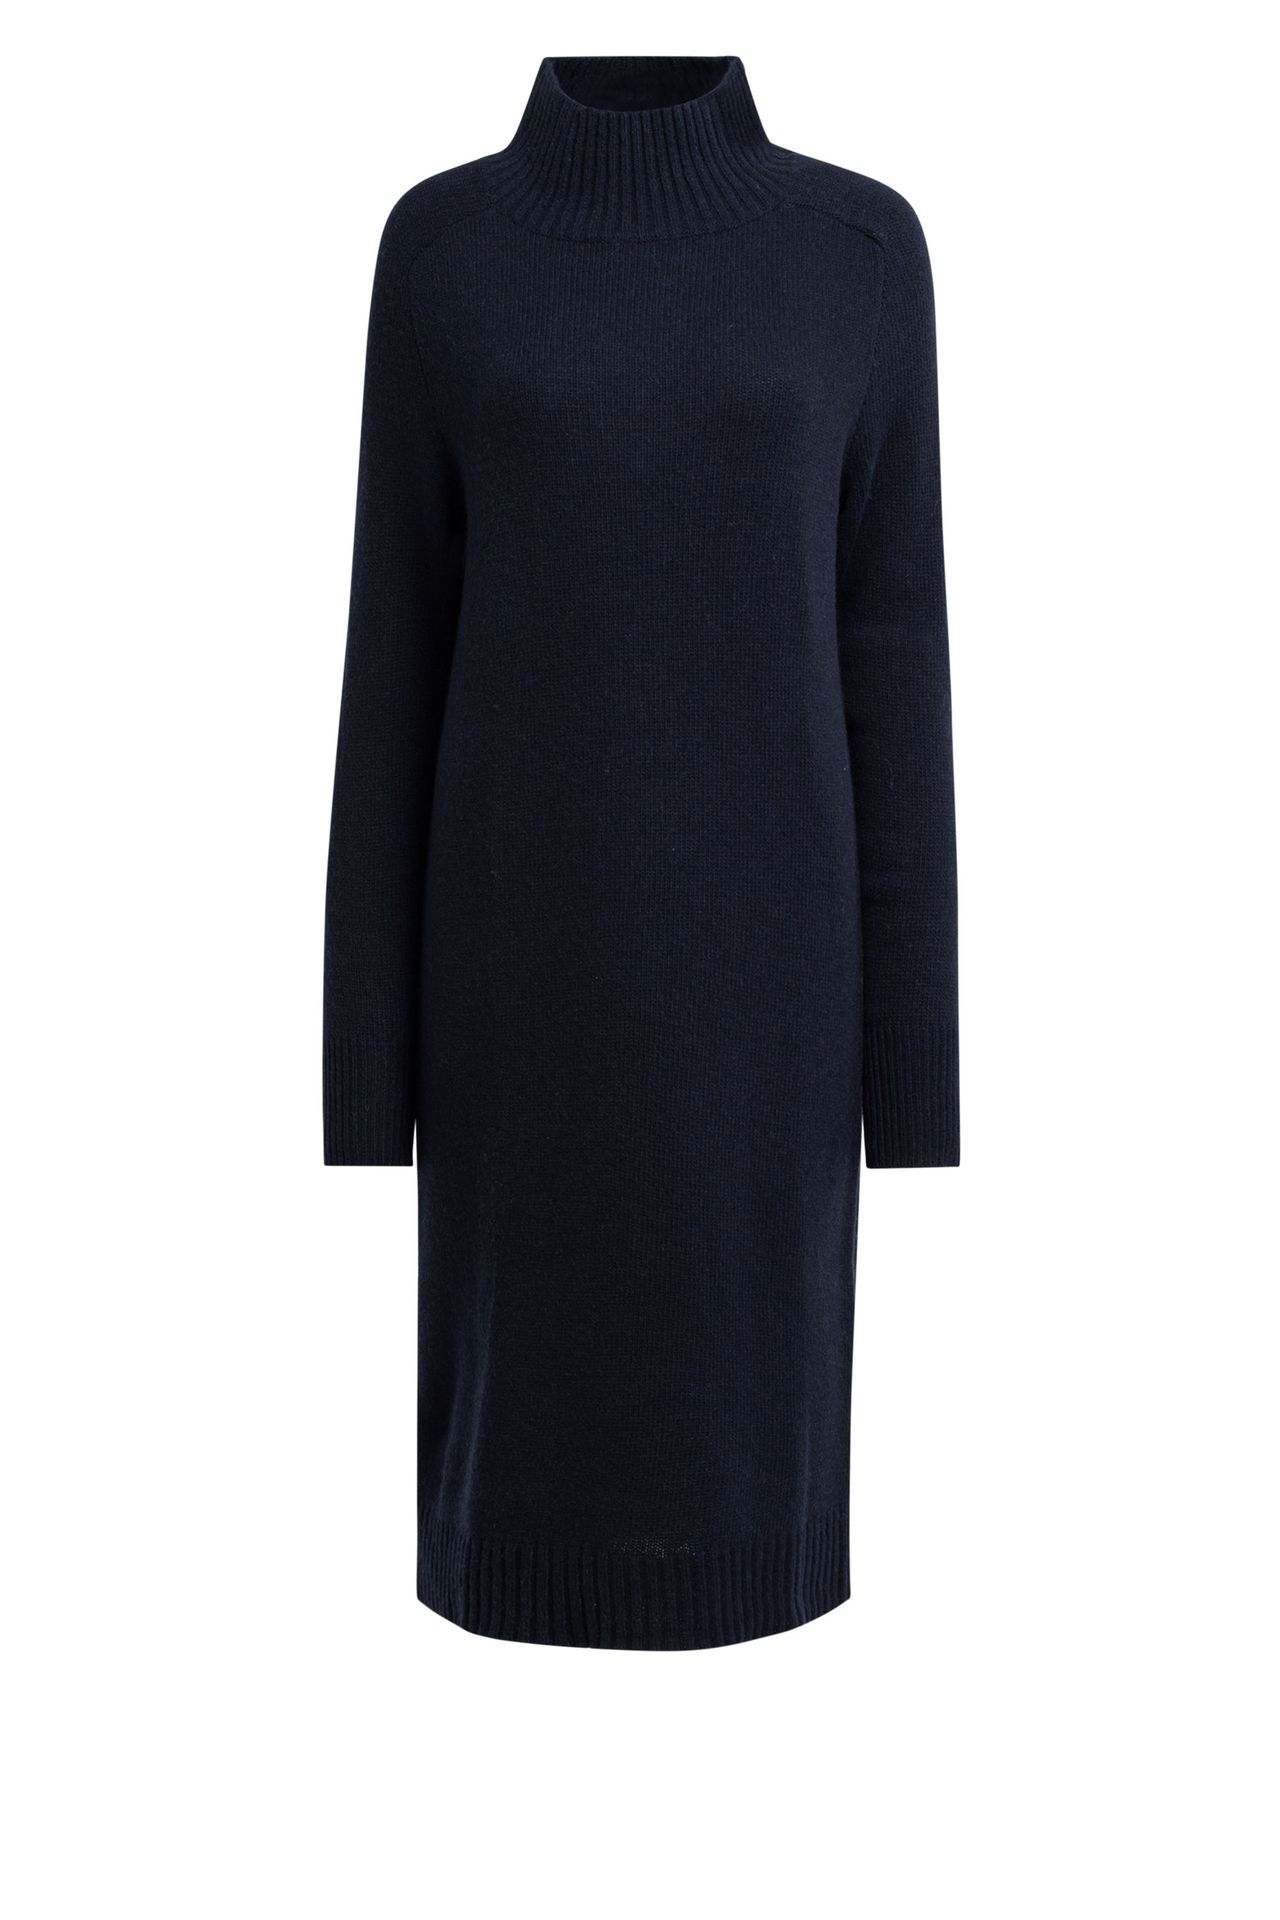  Gebreide jurk donkerblauw dark blue 210622-499-36